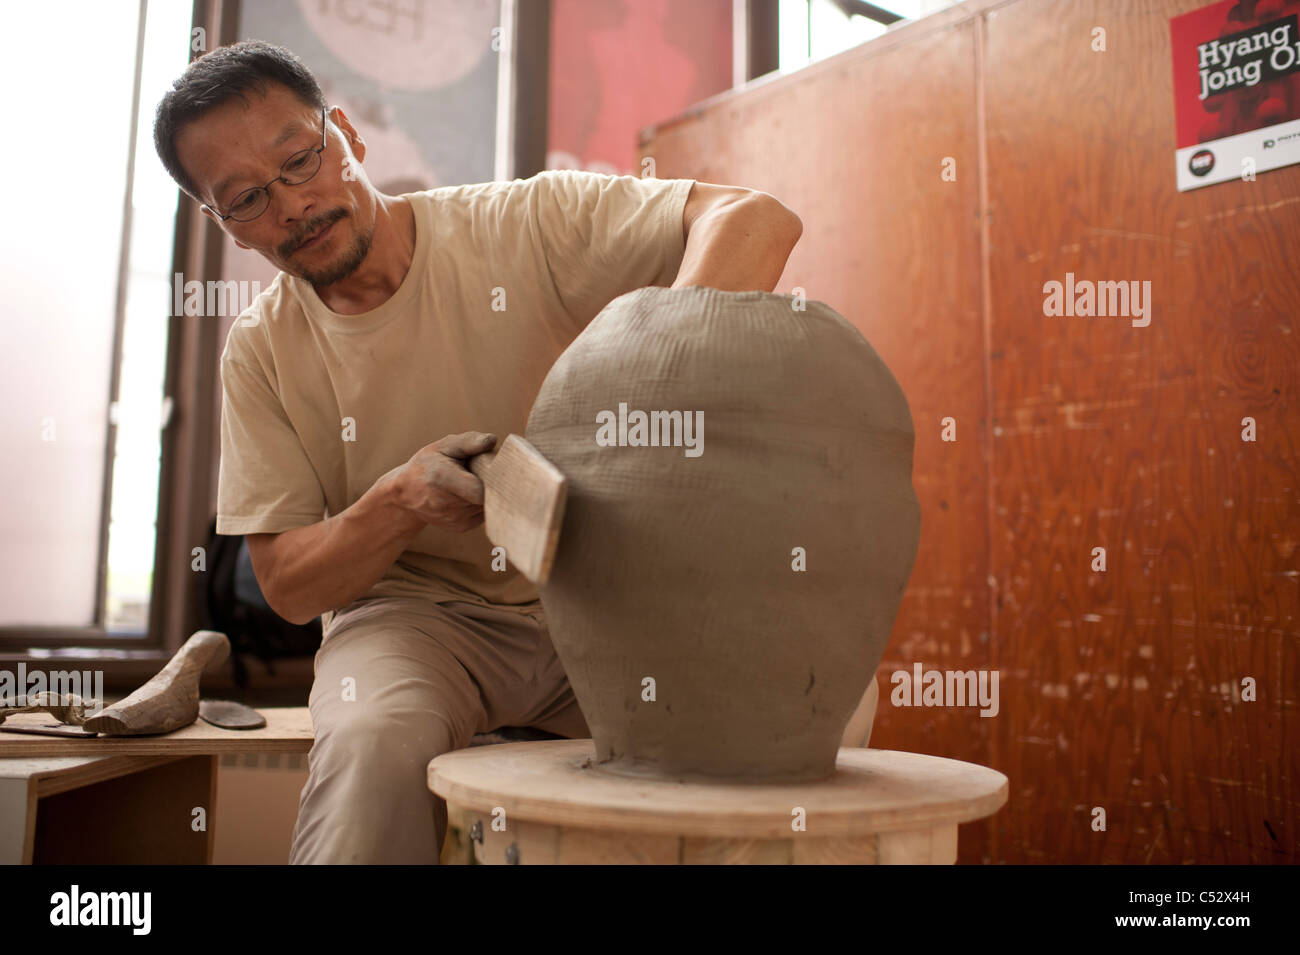 HYANG JONG OH la céramique coréenne bouilloire, mettant la touche finale à l'un de ses énormes bâtiments lors de la fête internationale de céramique Banque D'Images